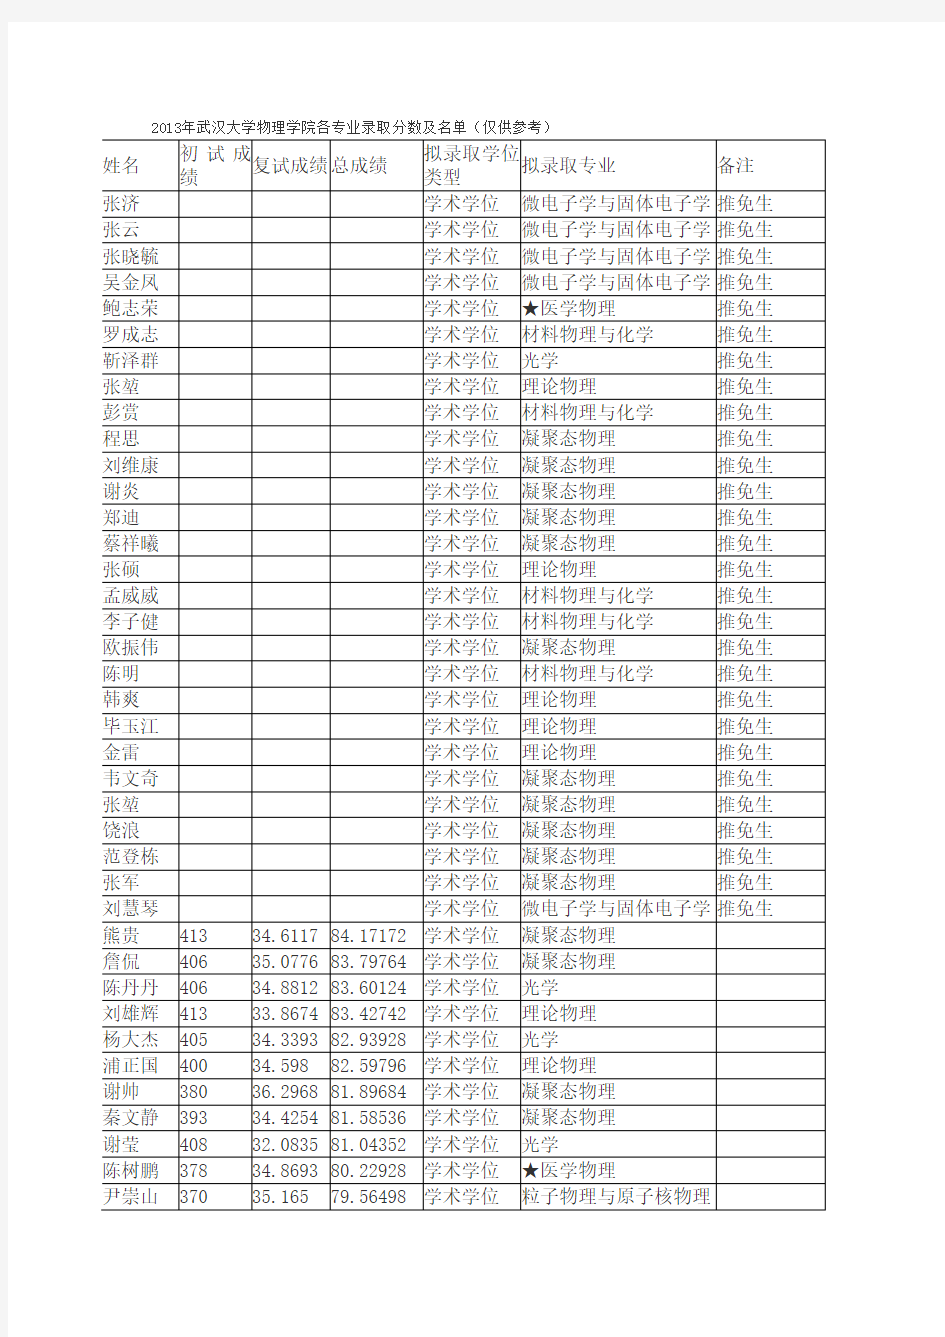 2013年武汉大学物理科学与技术学院各专业录取分数及名单